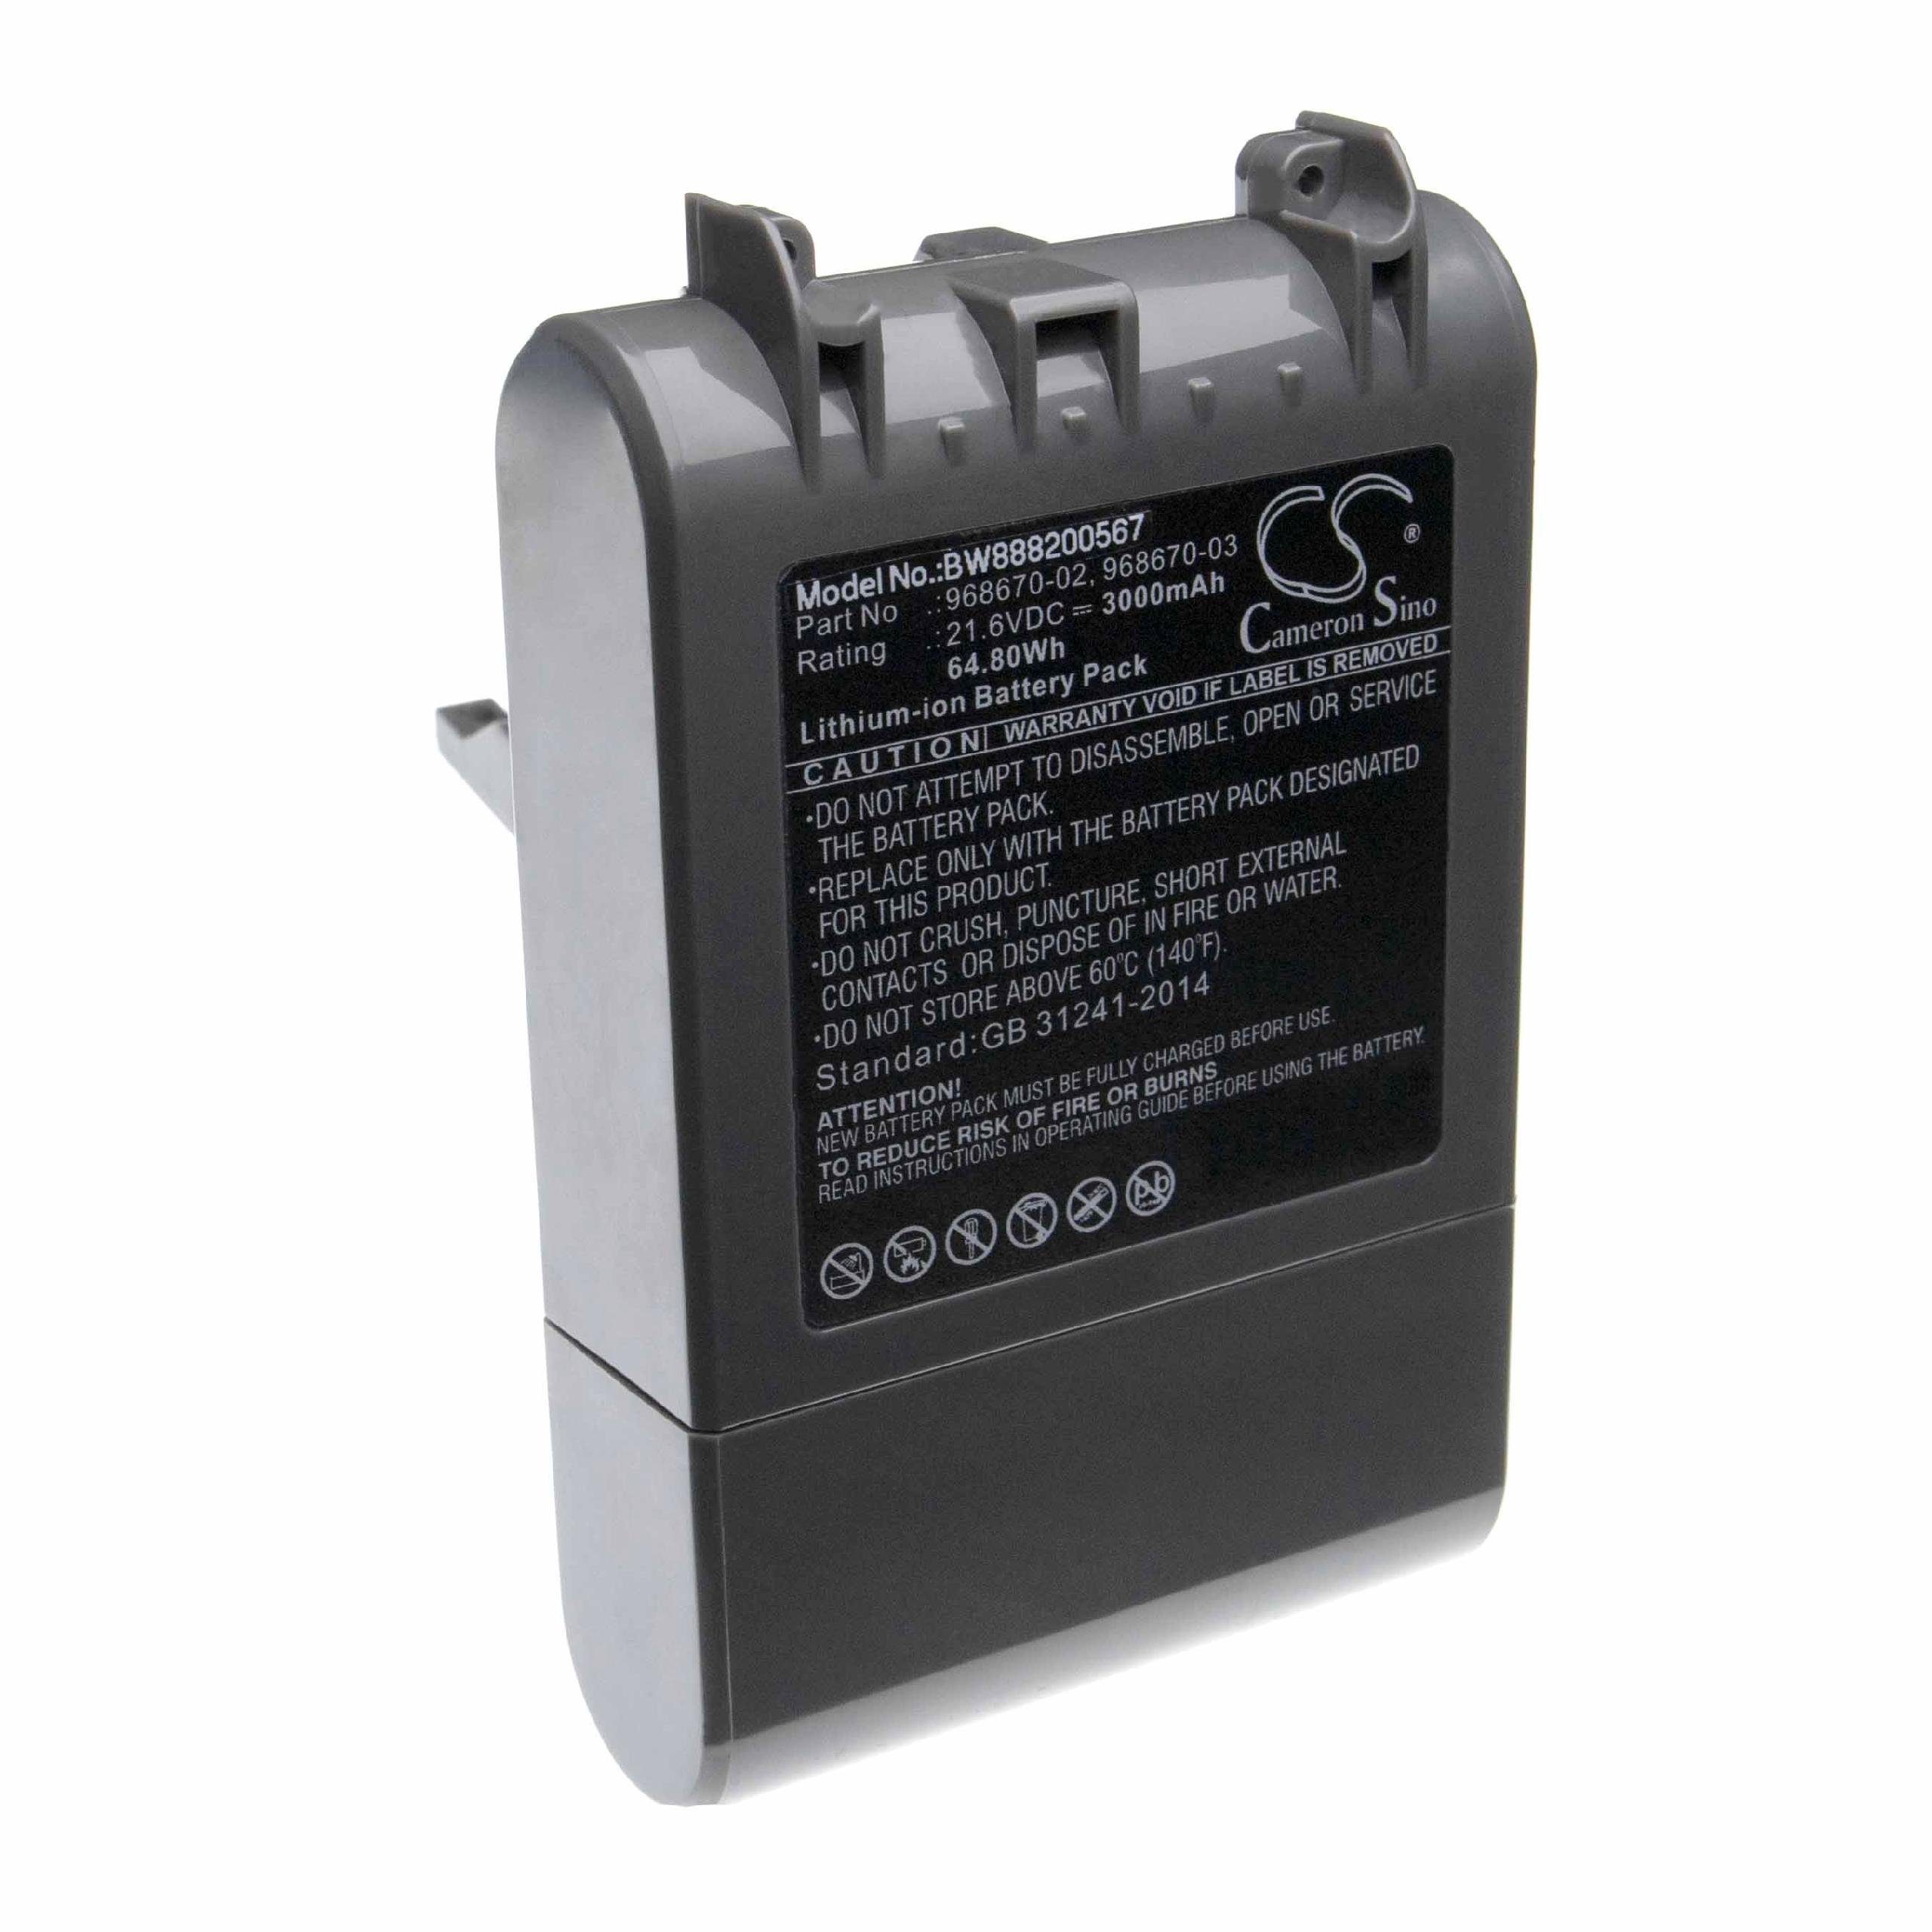 Batería reemplaza Dyson 968670-03, 968670-02 para aspiradora Dyson - 3000 mAh 21,6 V Li-Ion gris